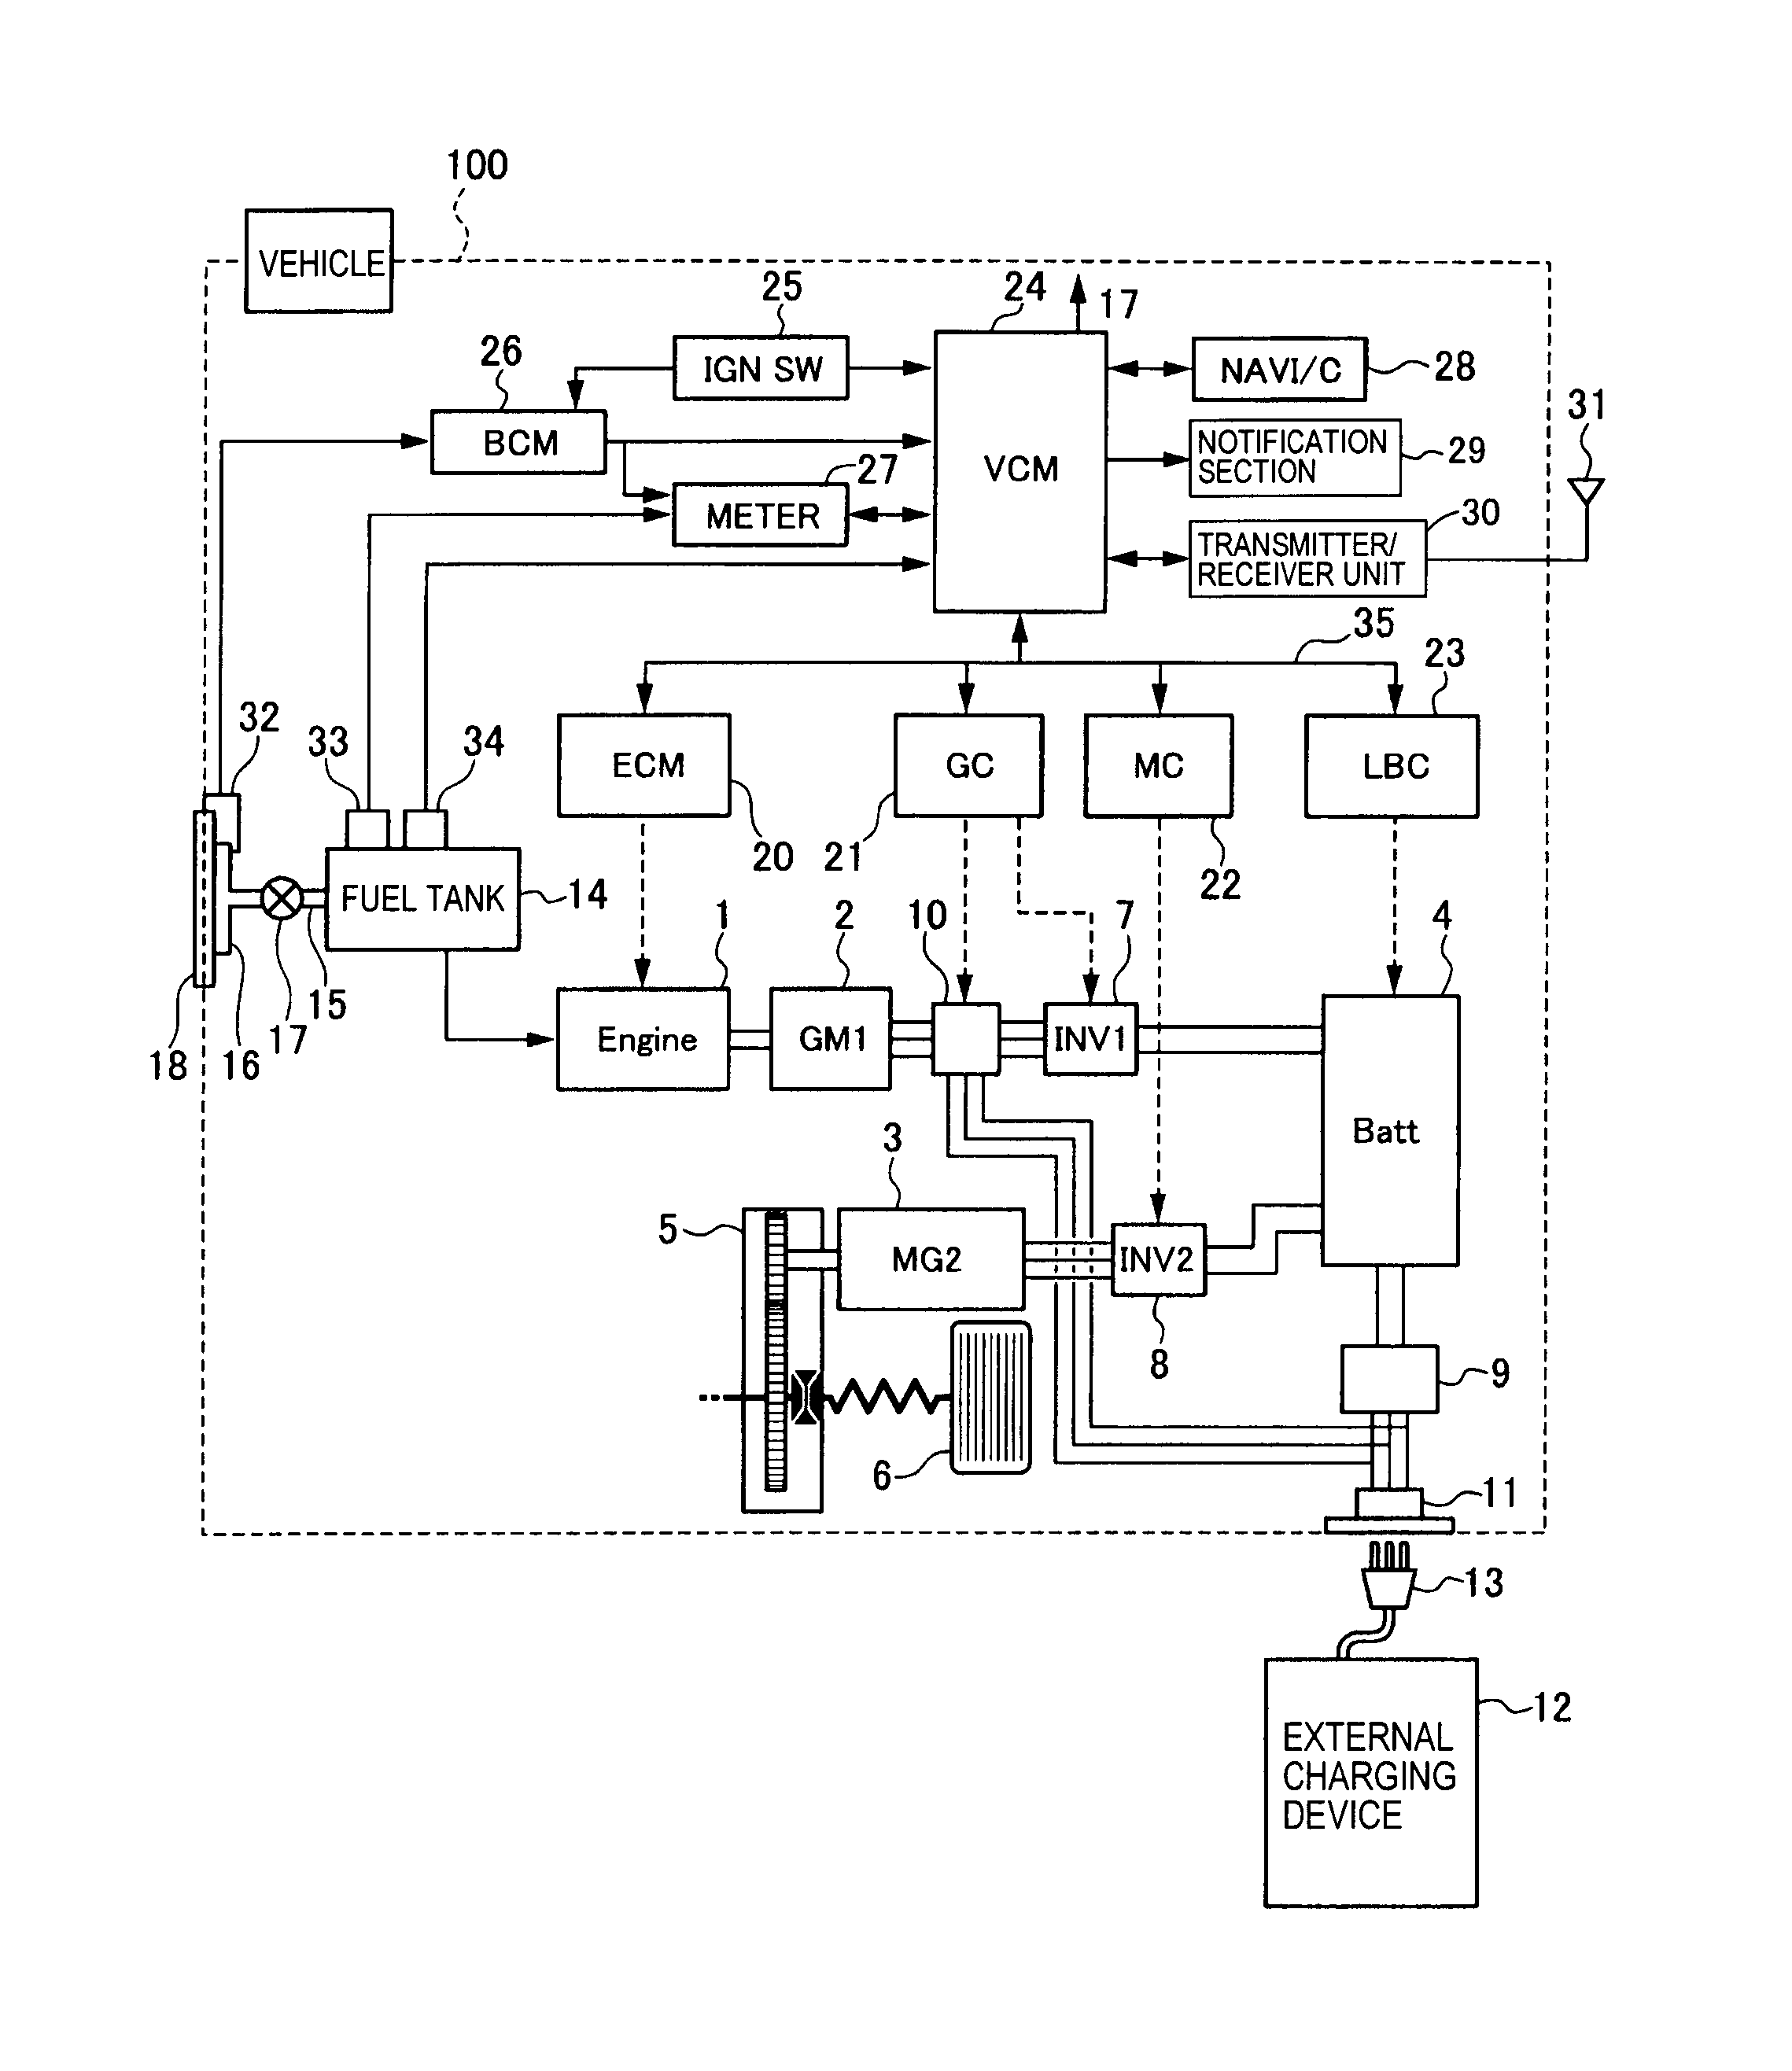 cugar1 wiring diagram